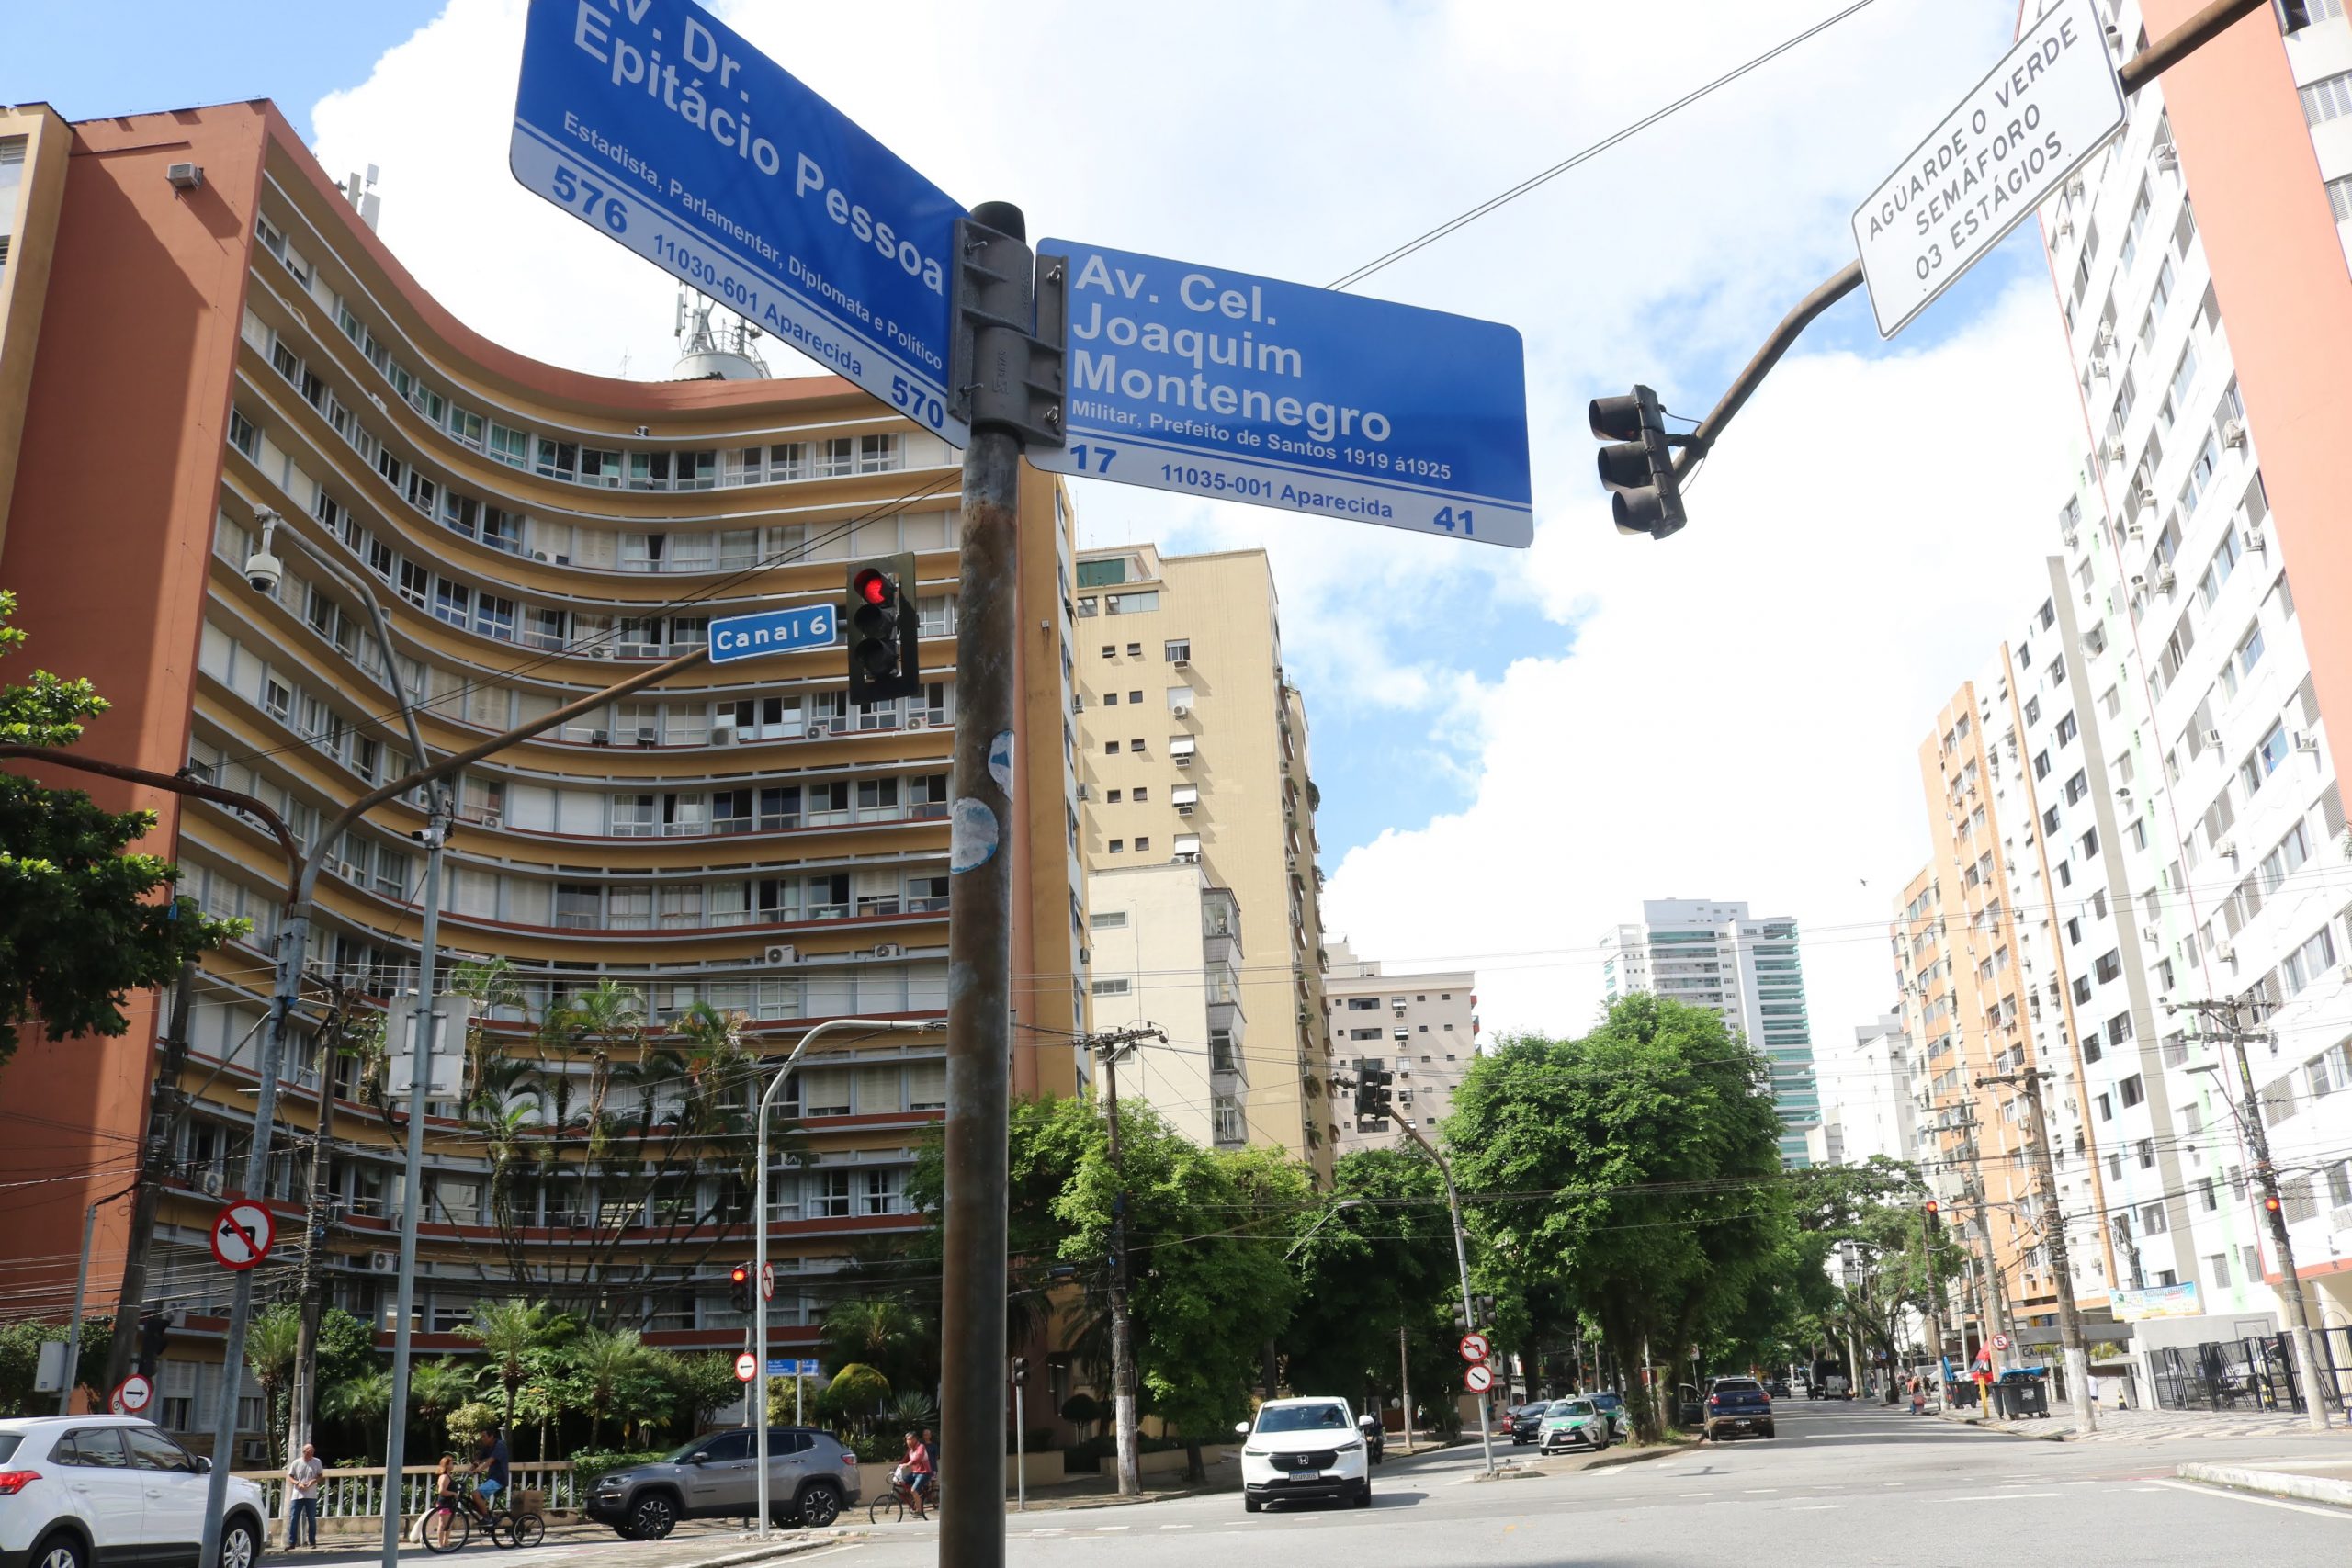 CET-Santos vai remodelar cruzamento no canal 6 | Jornal da Orla